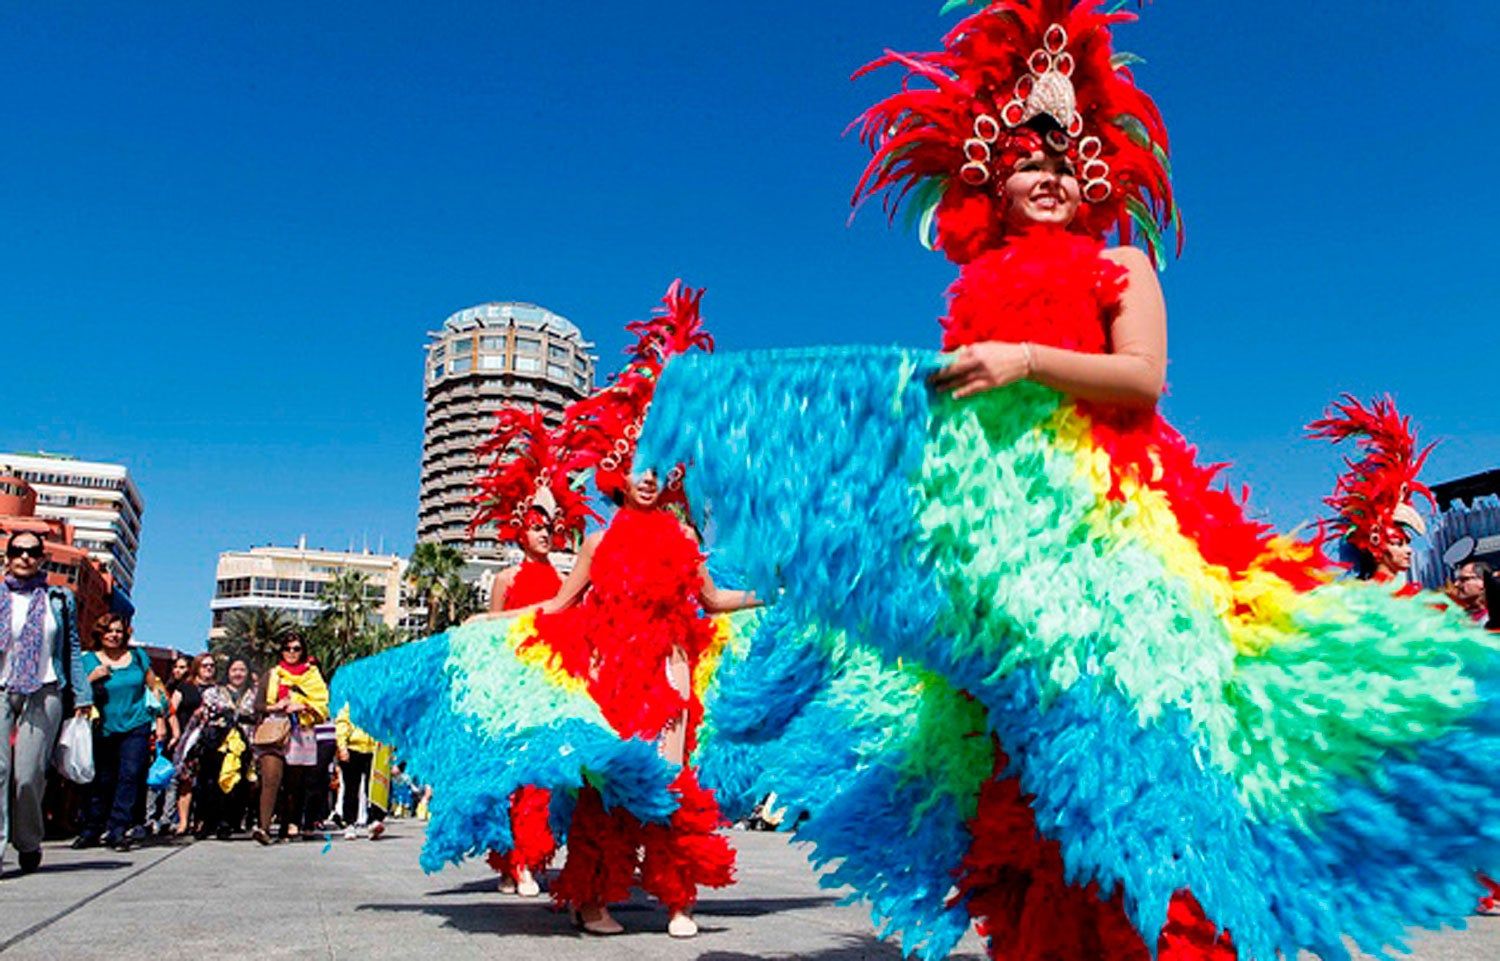 La magia del Carnaval por el mundo - Viajar